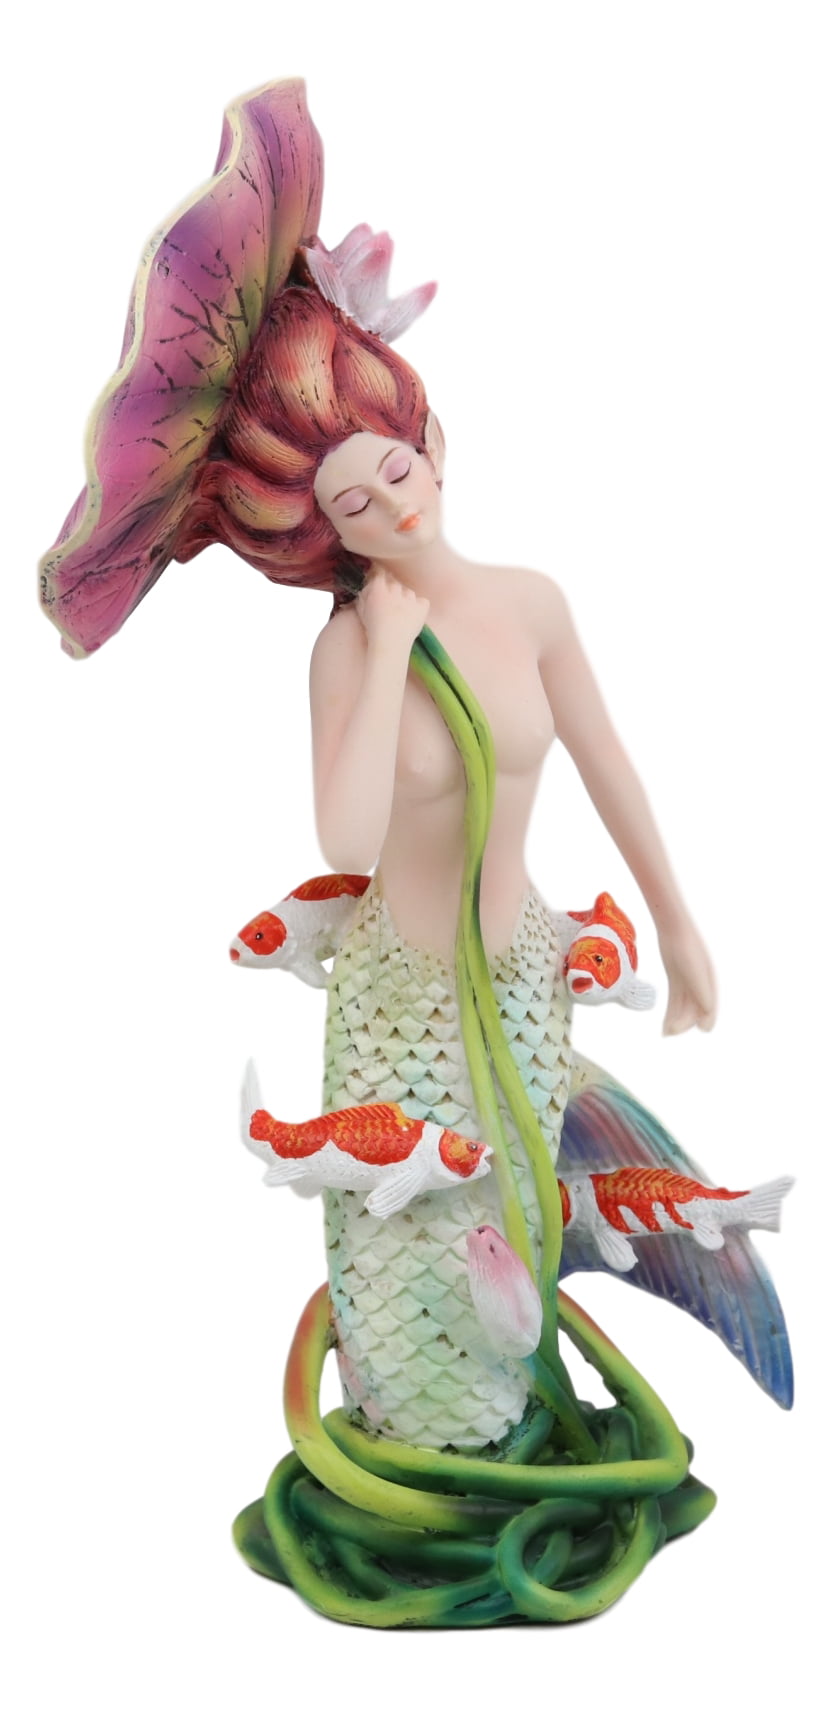 Enchanted Song Mermaid Sea Decorative Statue Figurine Ocean Fantasy Decor 